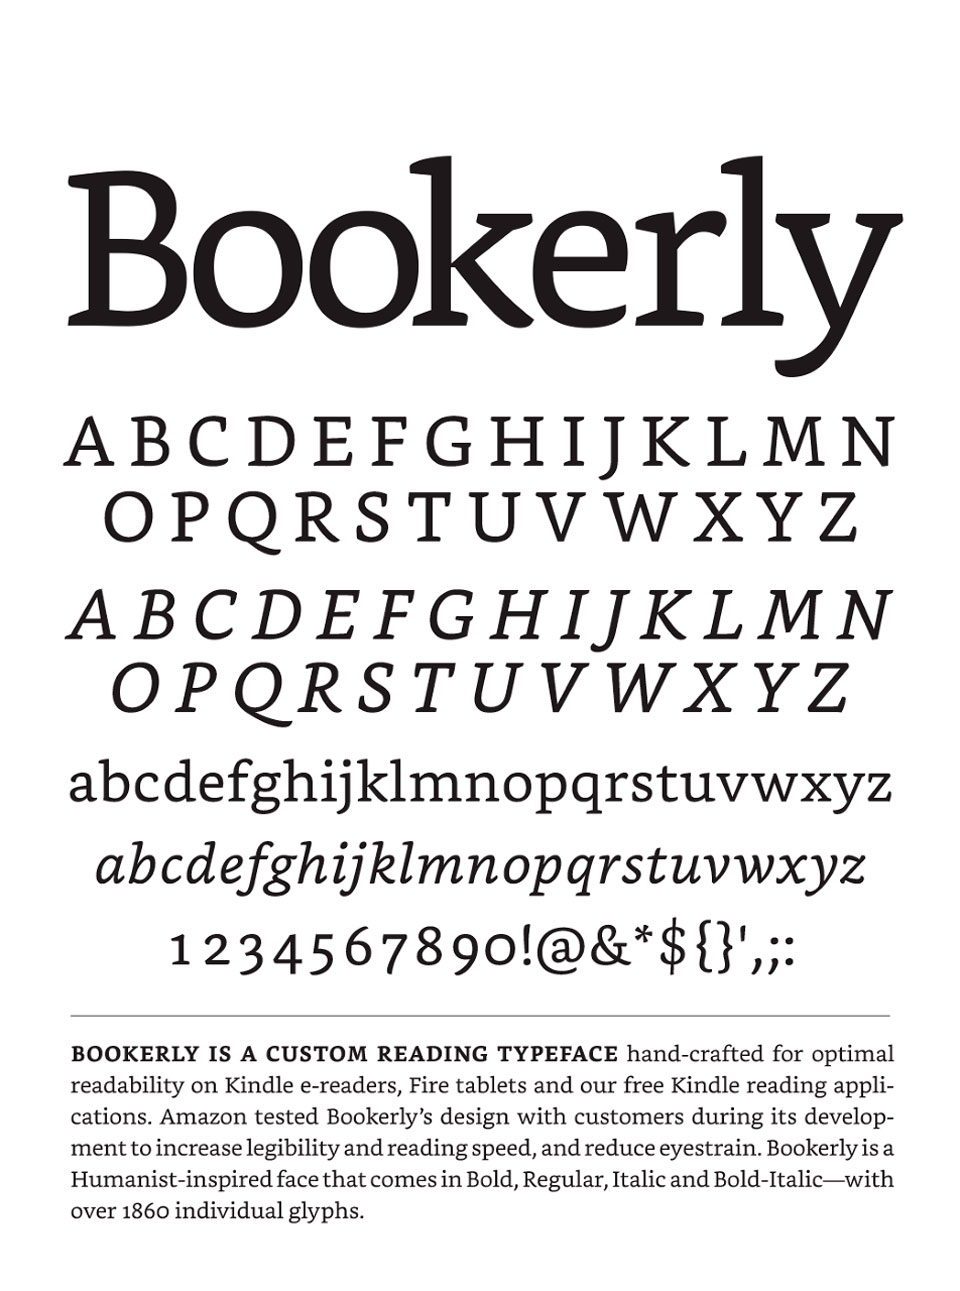 Bookerly es la nueva tipografía que sustituirá a Caecilia en los dispositivos Kindle. 